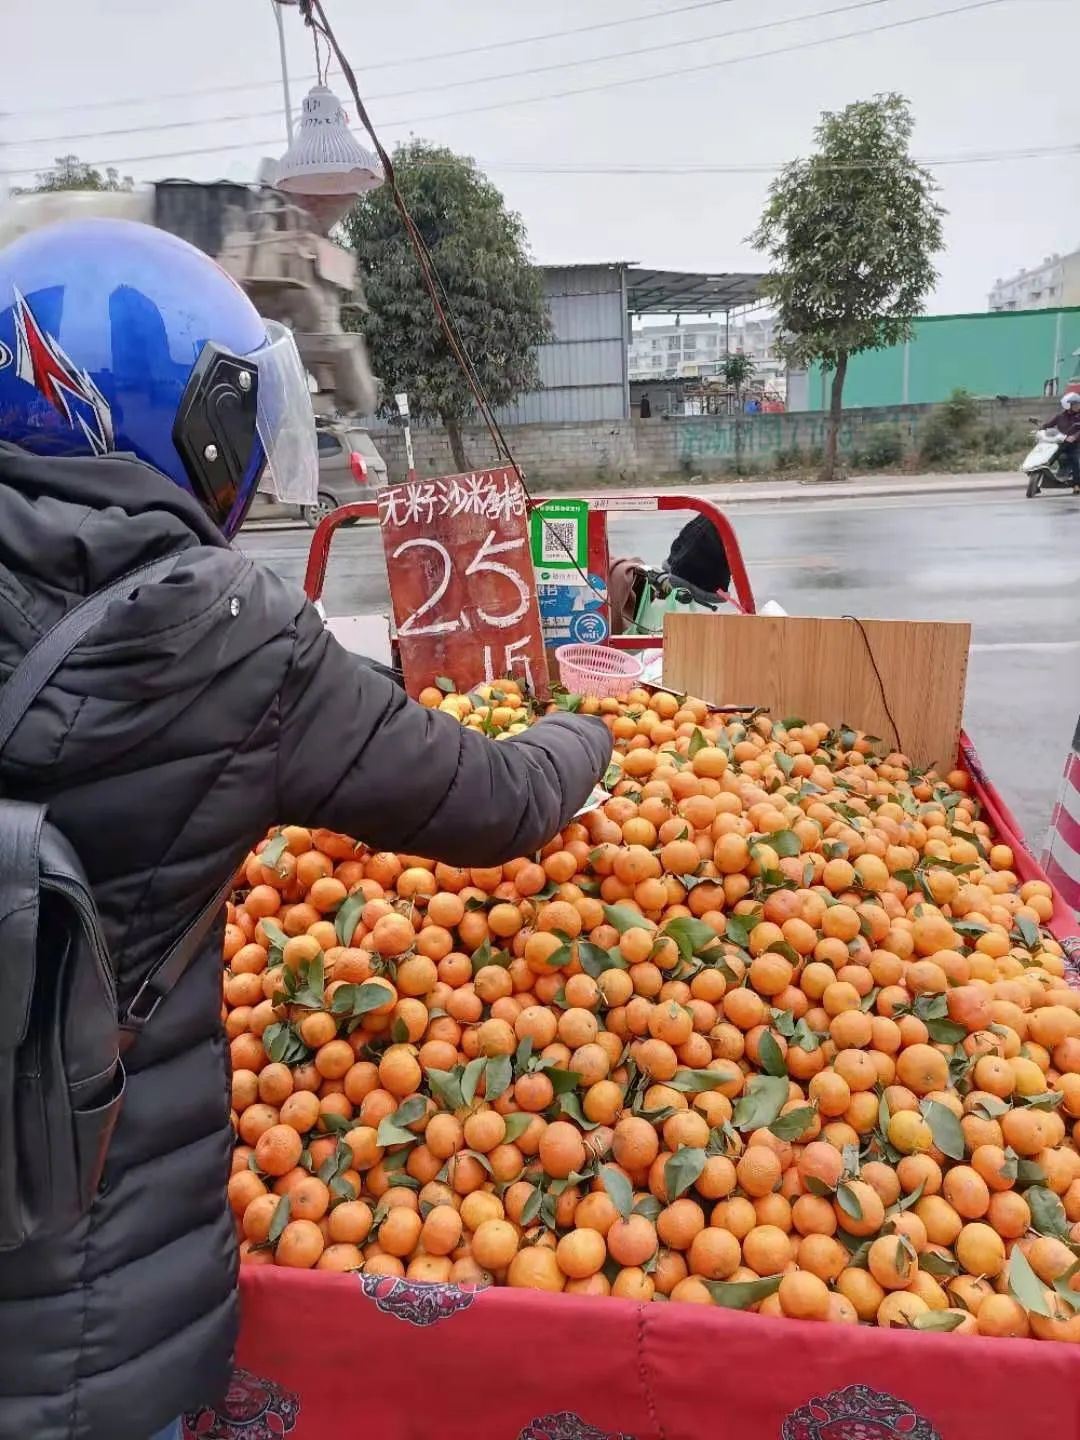 柑橘怎么啦？1元一斤无人问   28元一斤遭抢购